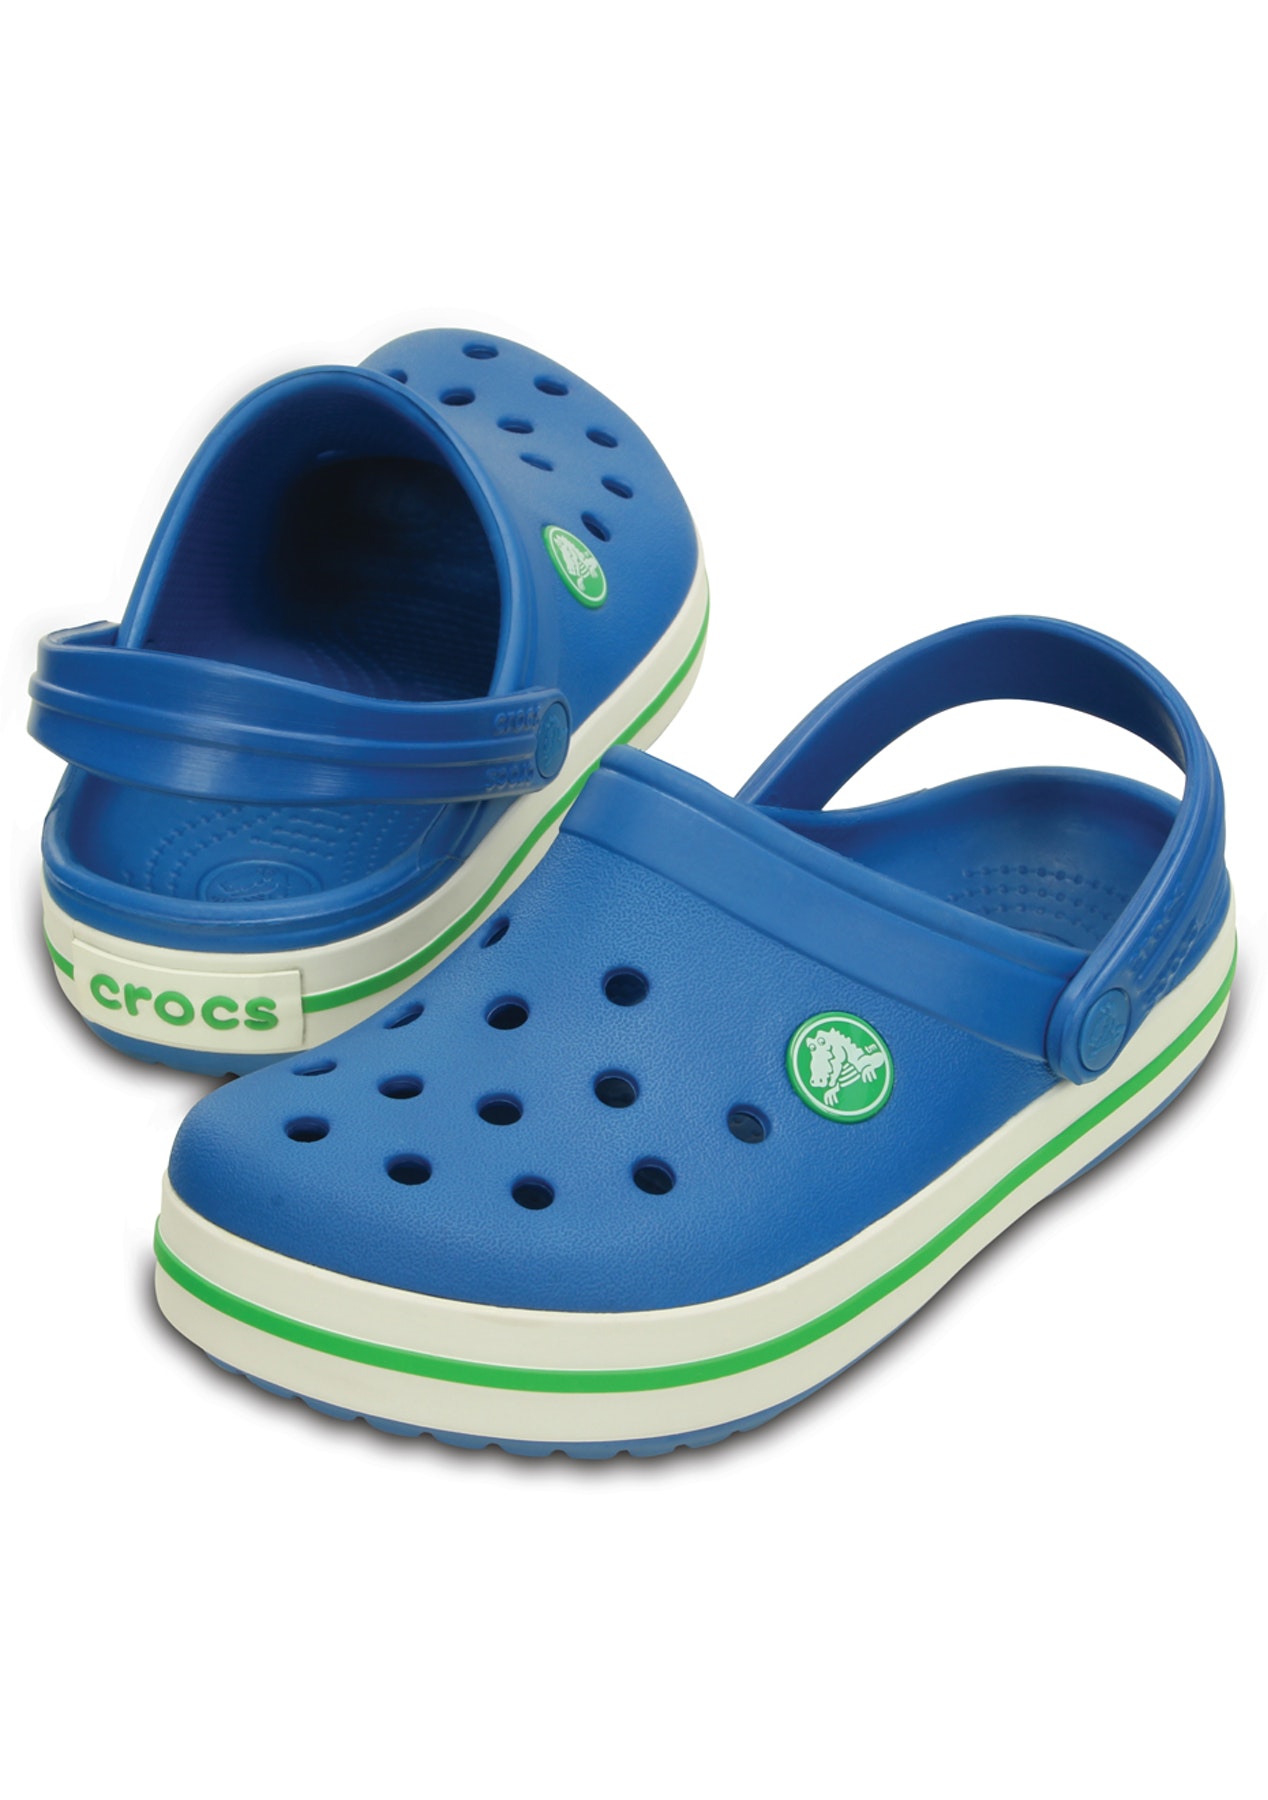 crocs ultramarine